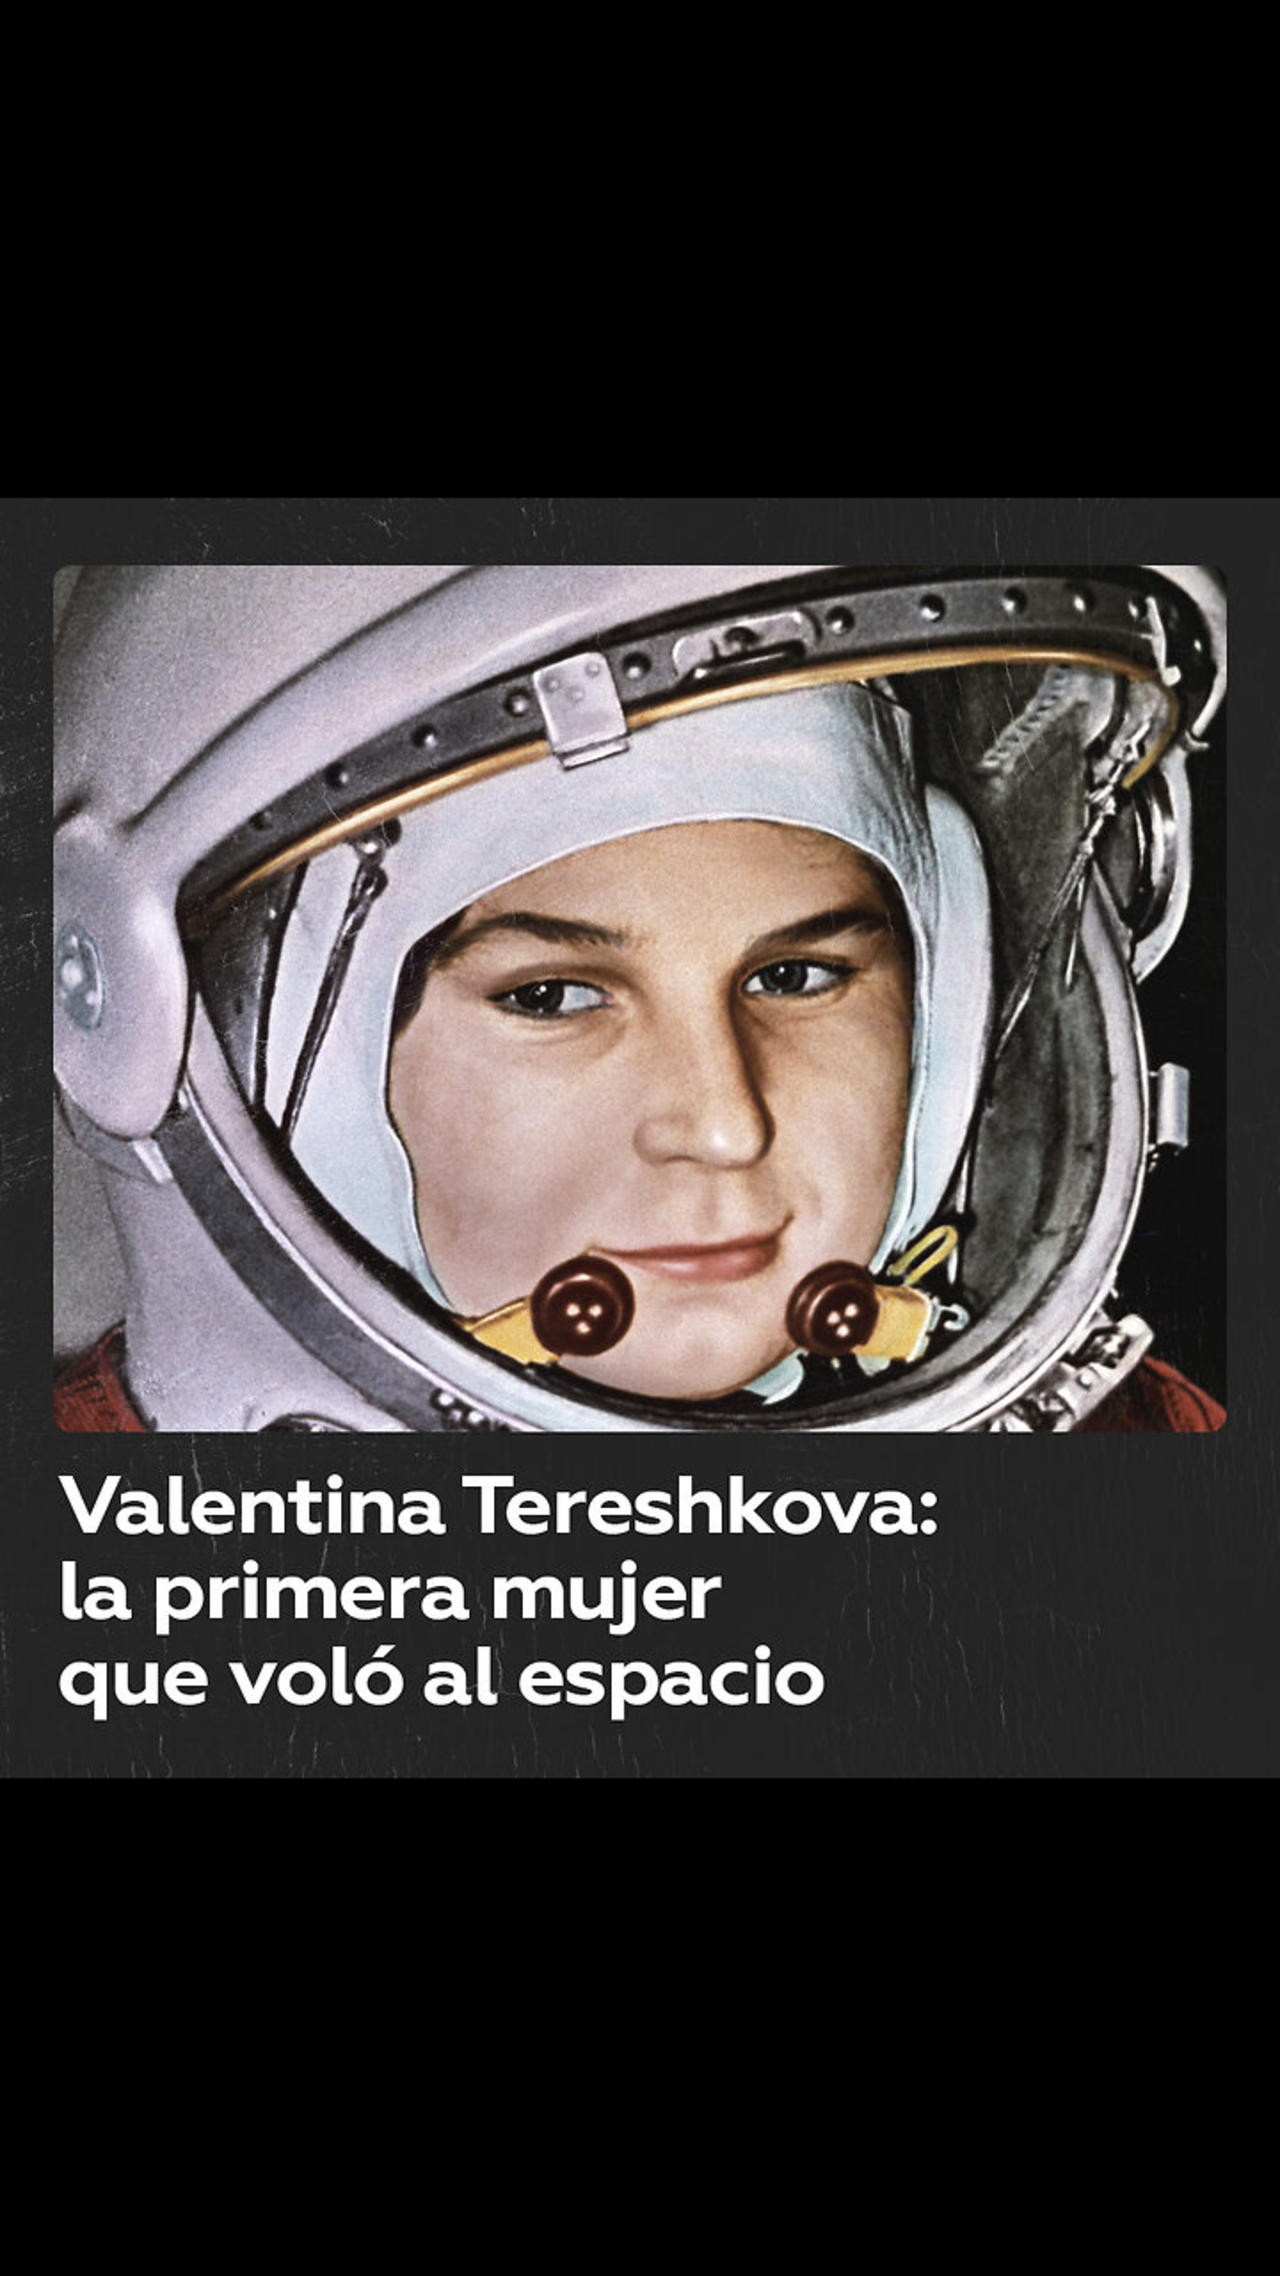 Valentina Tereshkova, la primera mujer en el espacio exterior